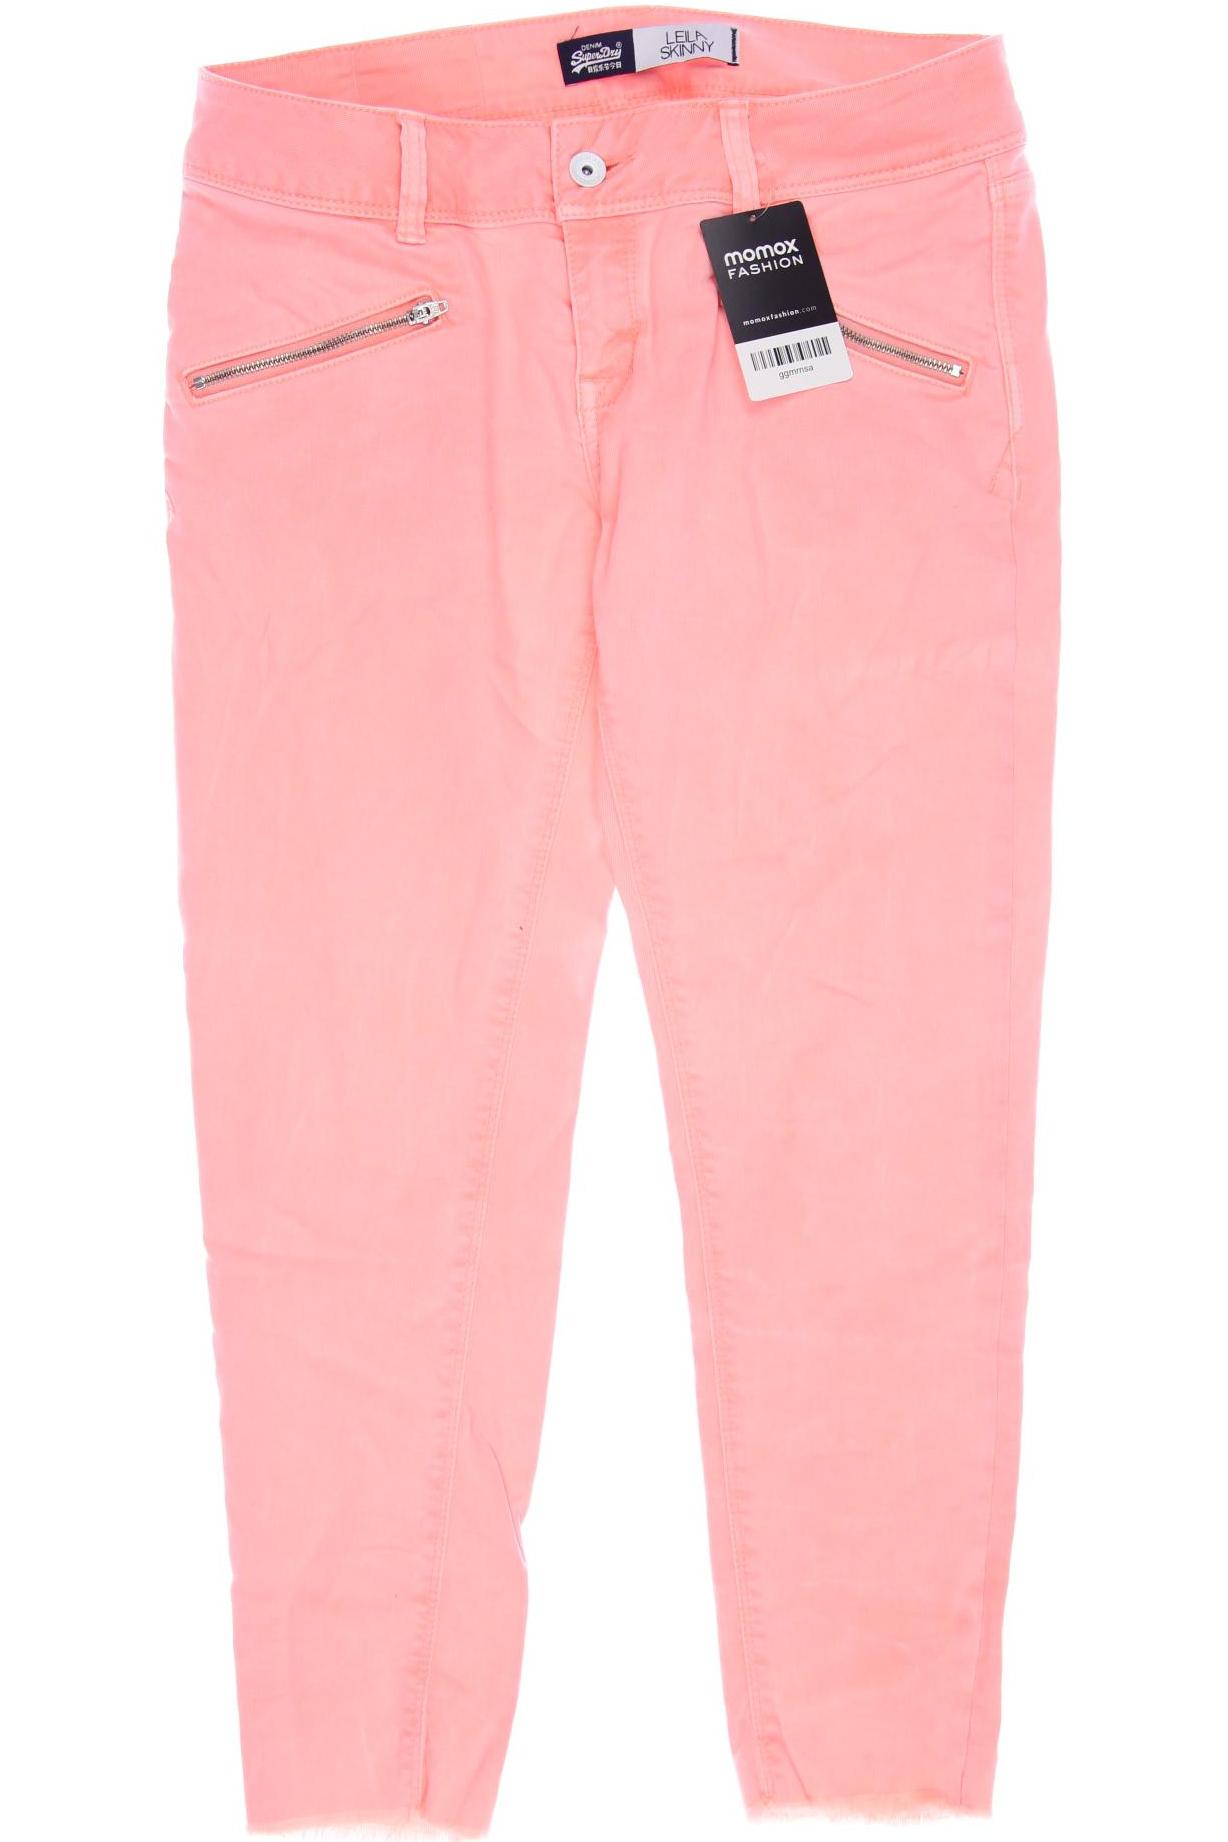 Superdry Damen Jeans, pink von Superdry